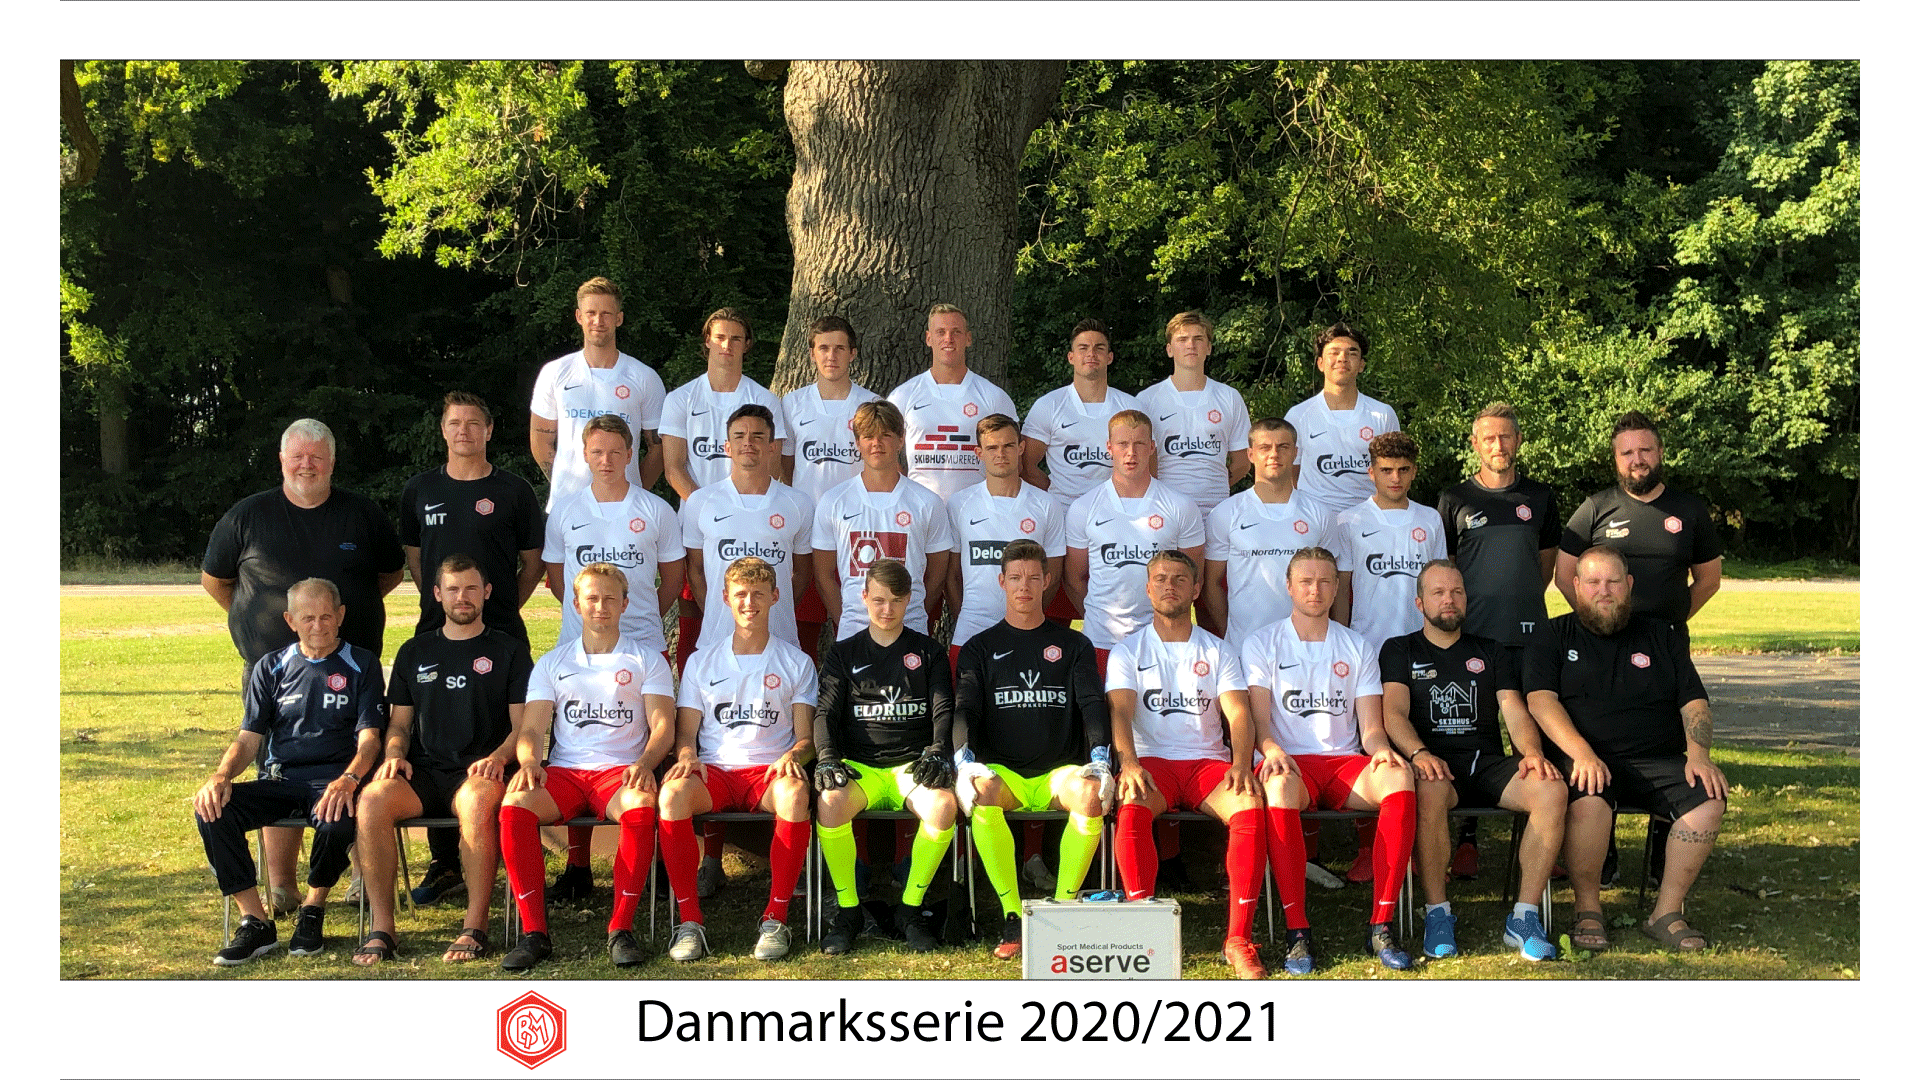 Marienlyst - Danmarksserien